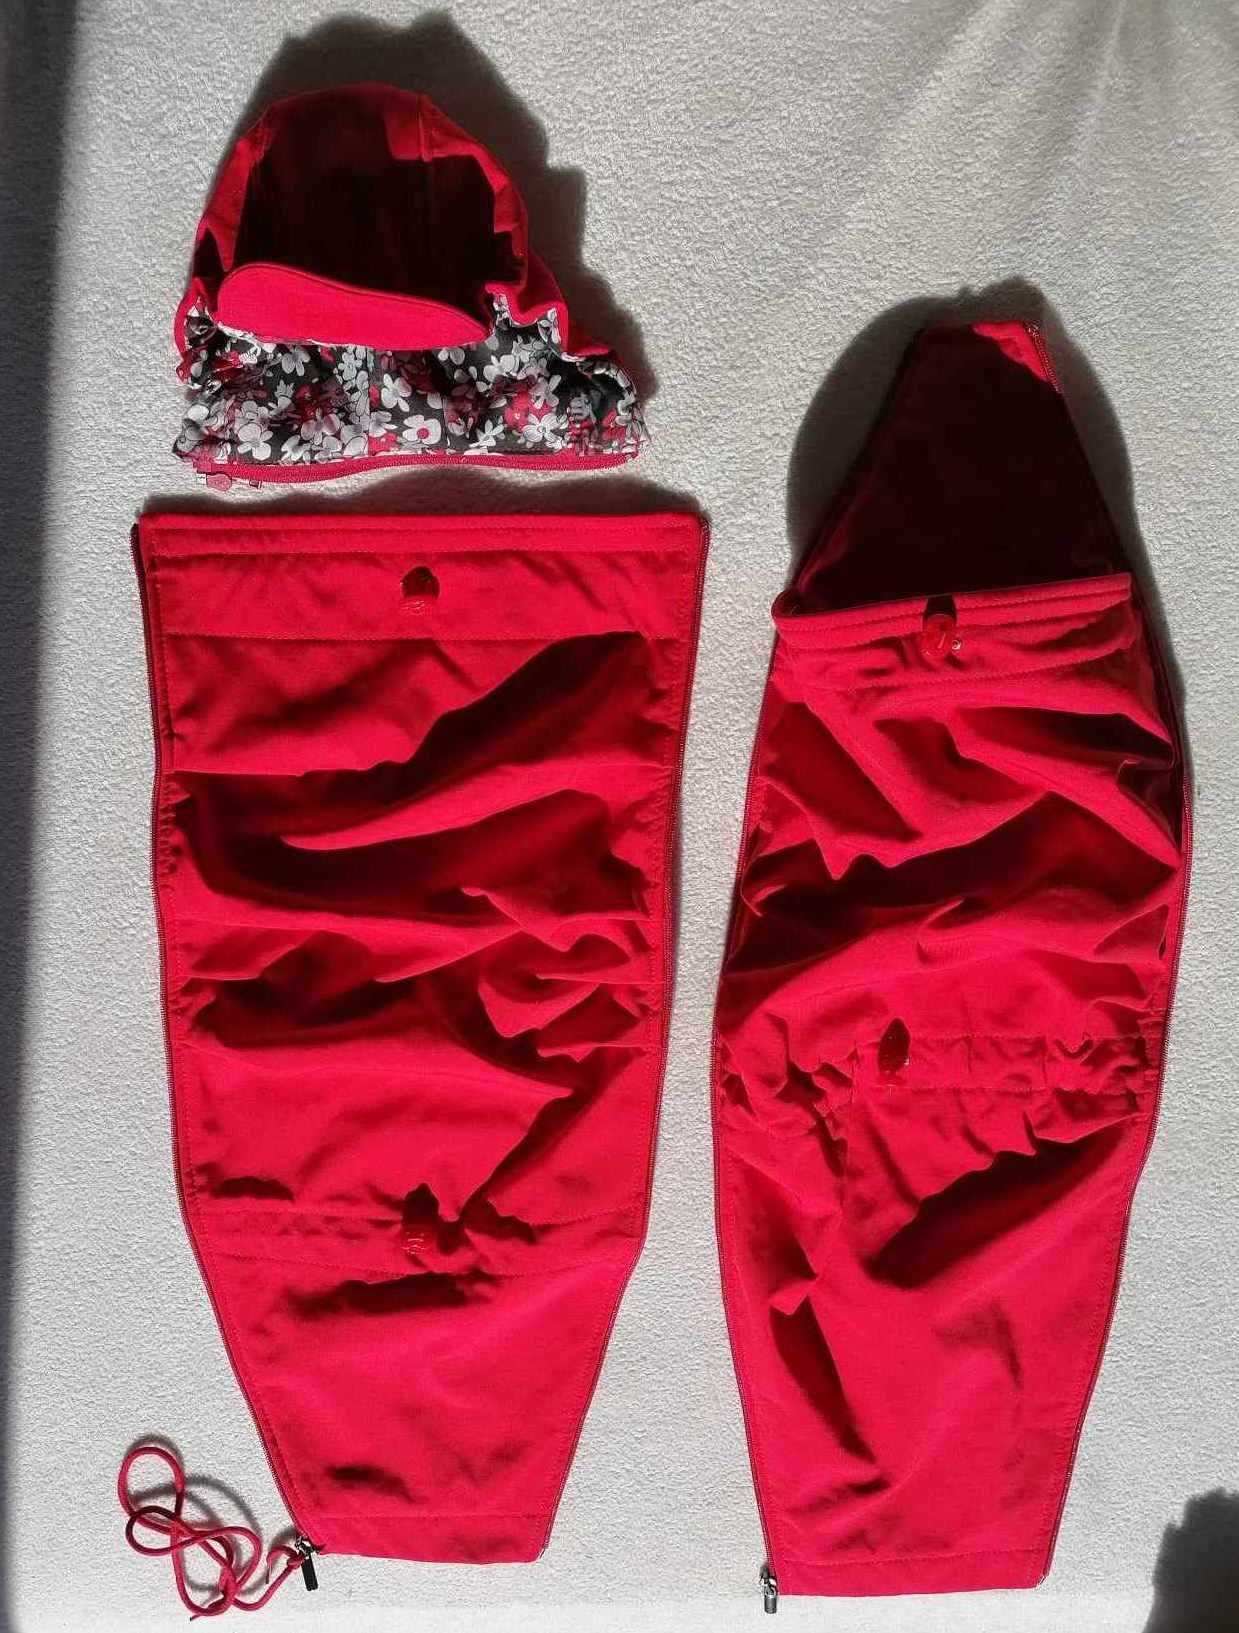 kurtka Twiga ciążowa do noszenia dla dwojga softshell 4w1 czerwona XL